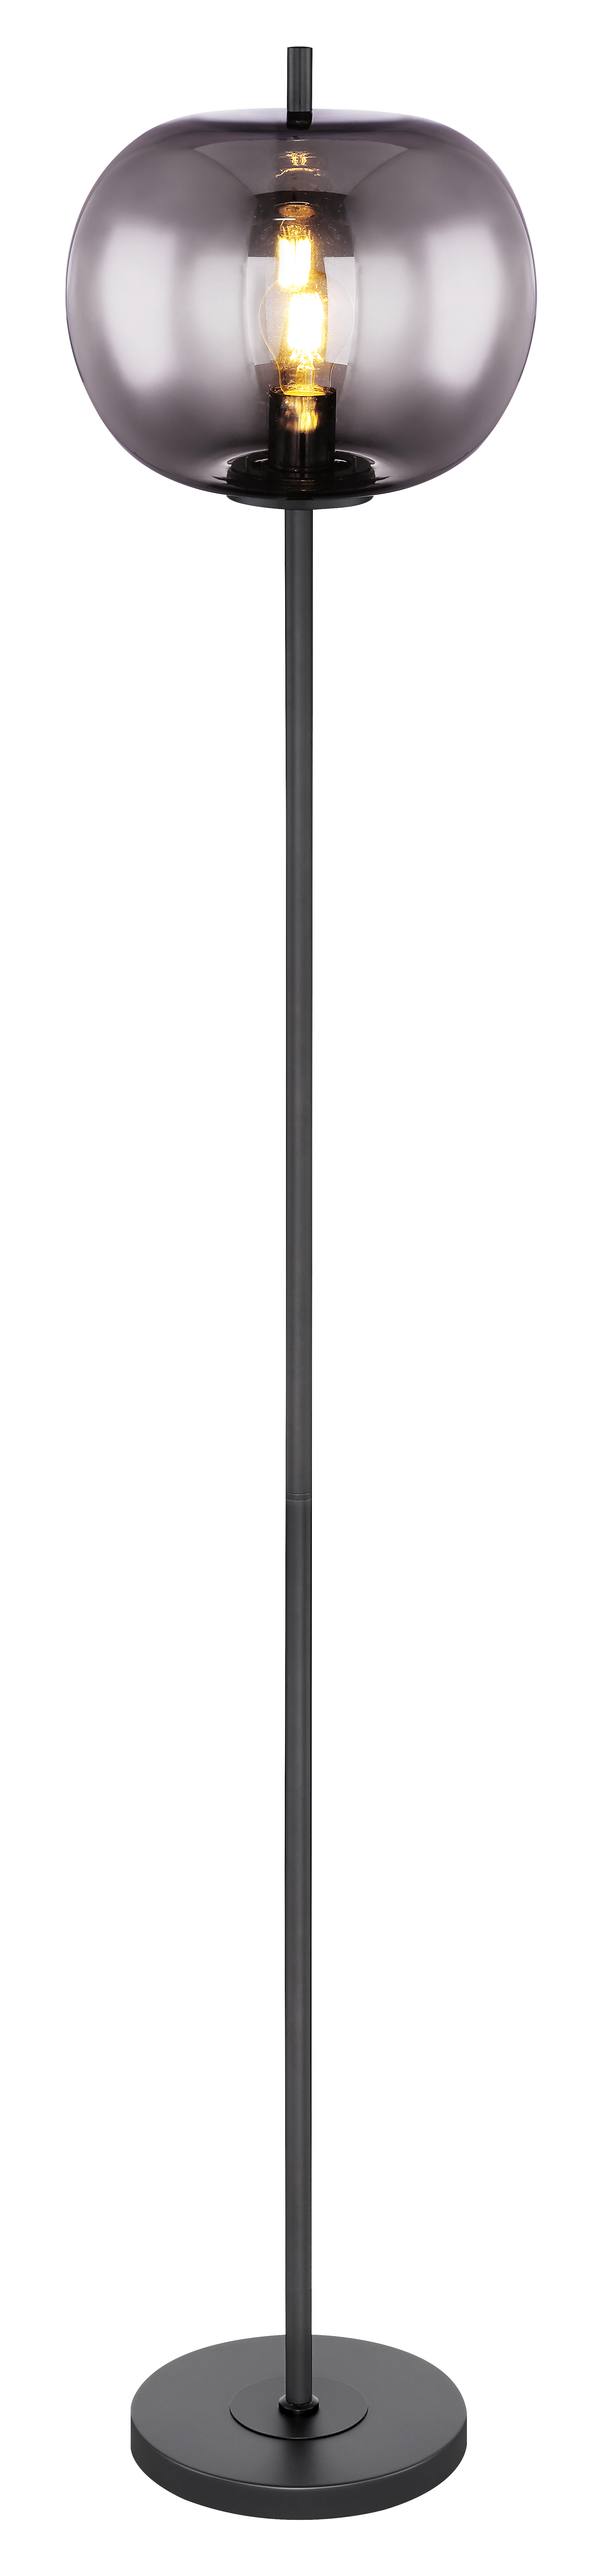 Stehleuchte - Metall schwarz - Glas - 15345S